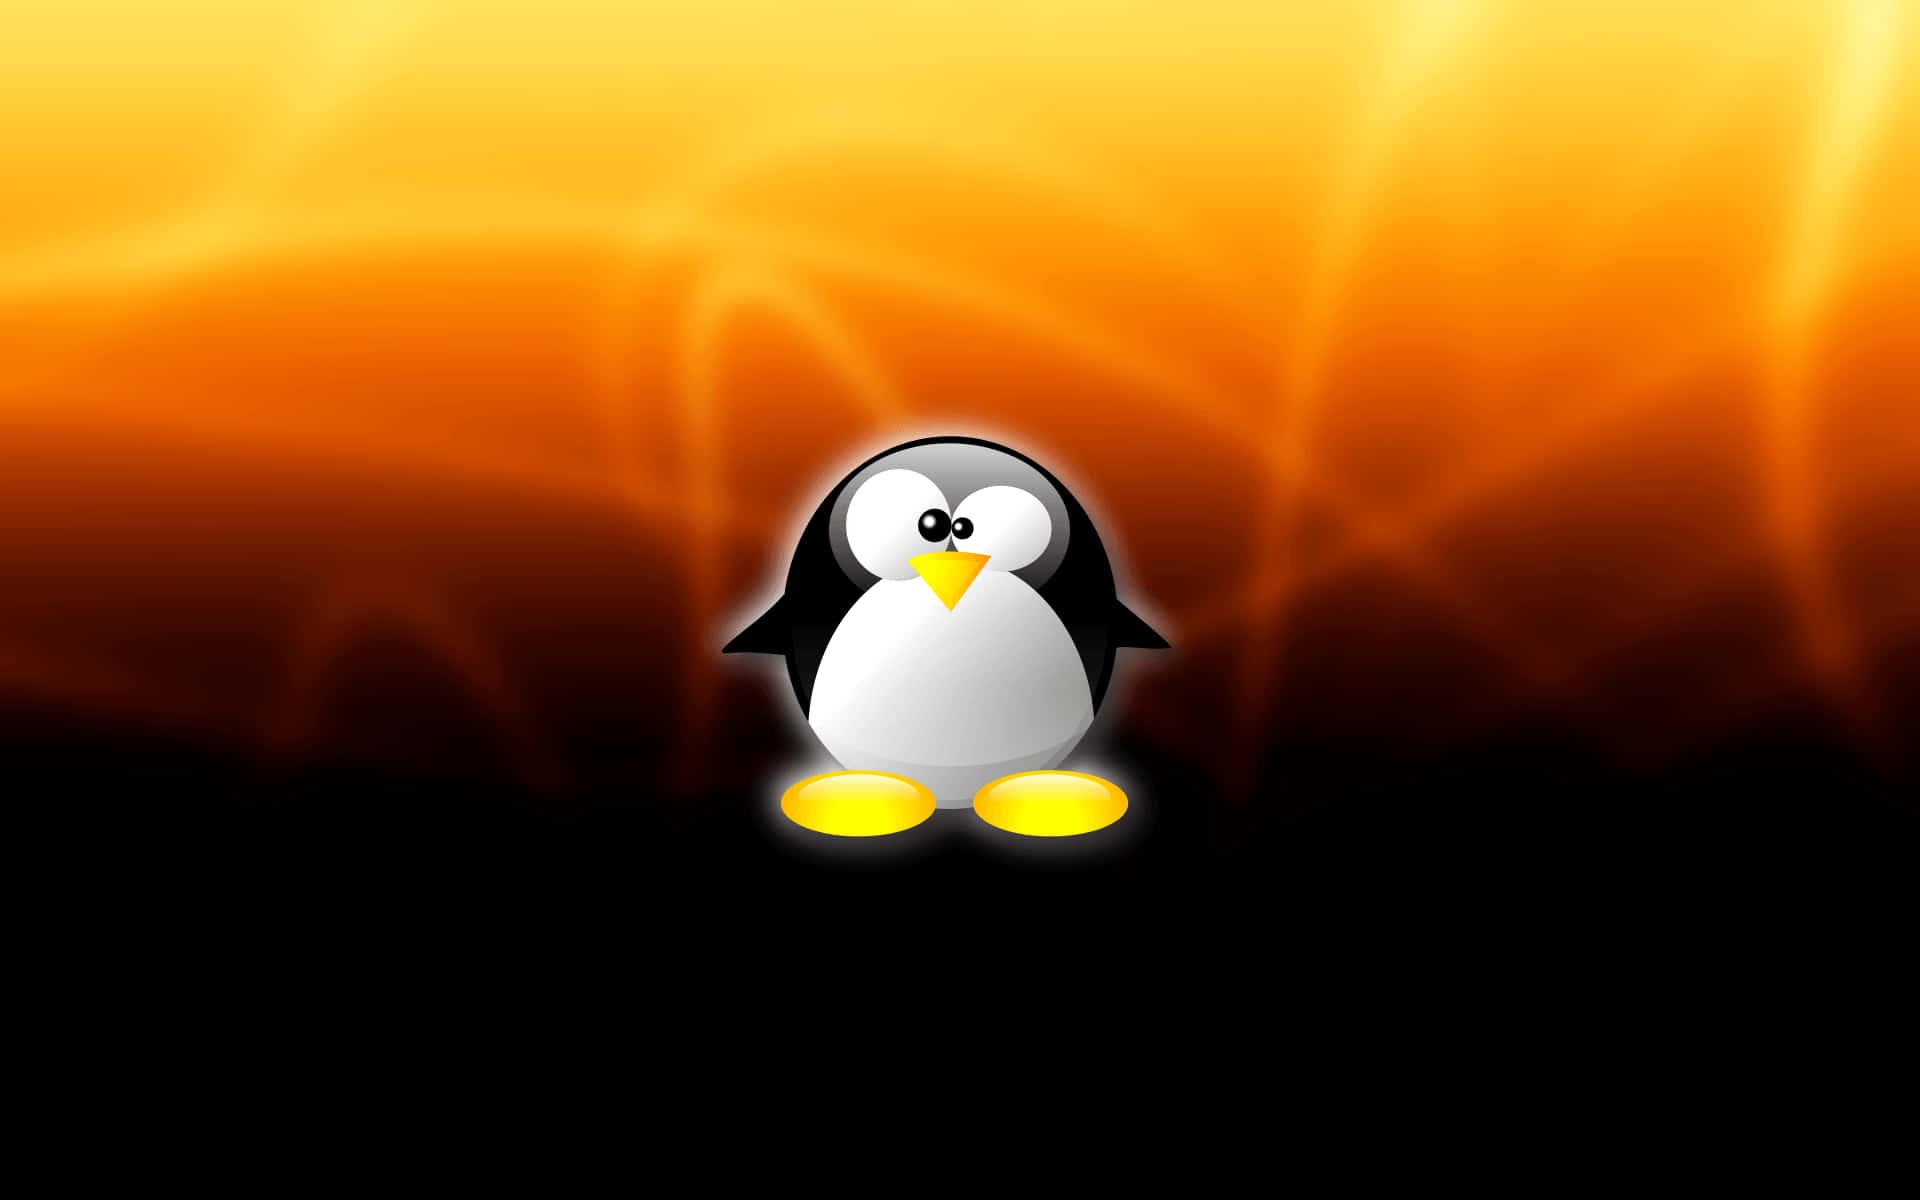 Börjadin Digitala Resa Idag Med En Linux Os.